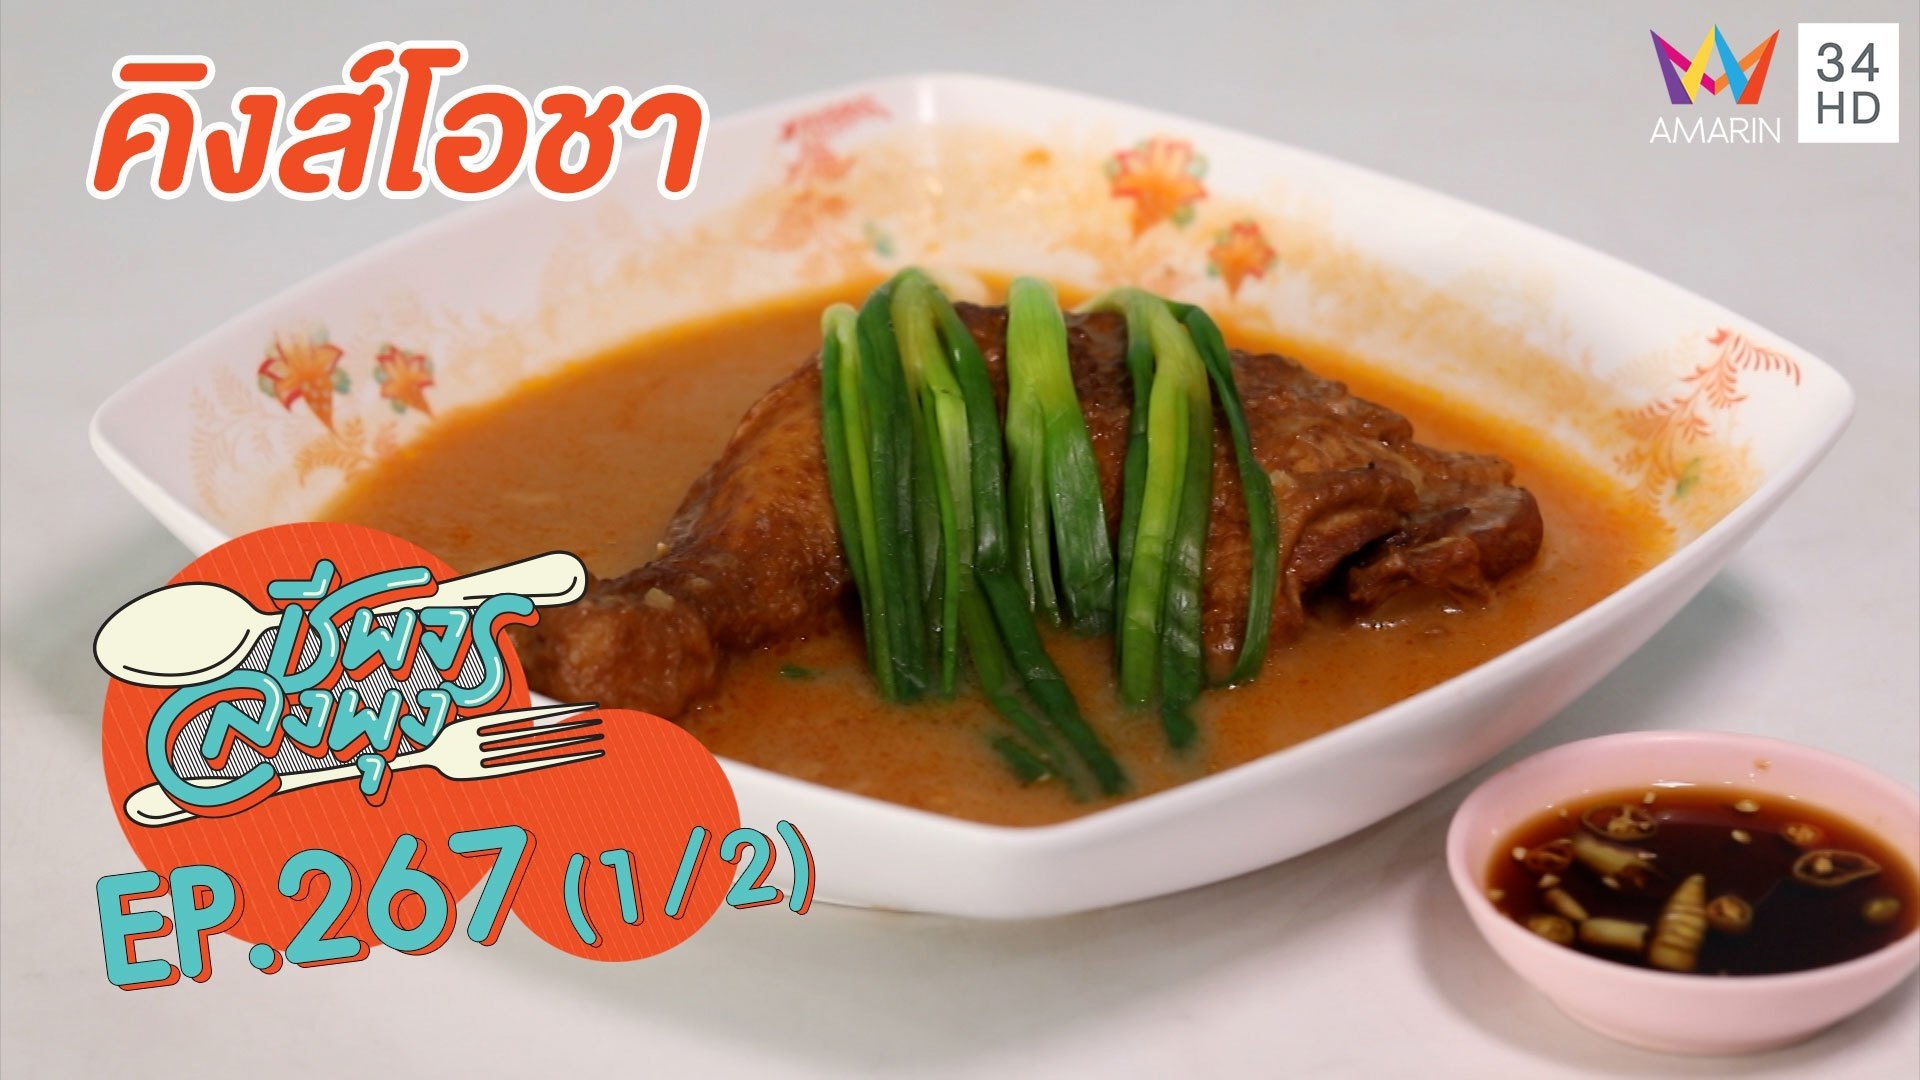 อาหารเช้าสูตรเด็ด ร้านคิงส์โอชา | ชีพจรลงพุง | 10 ม.ค. 64 (1/2) | AMARIN TVHD34